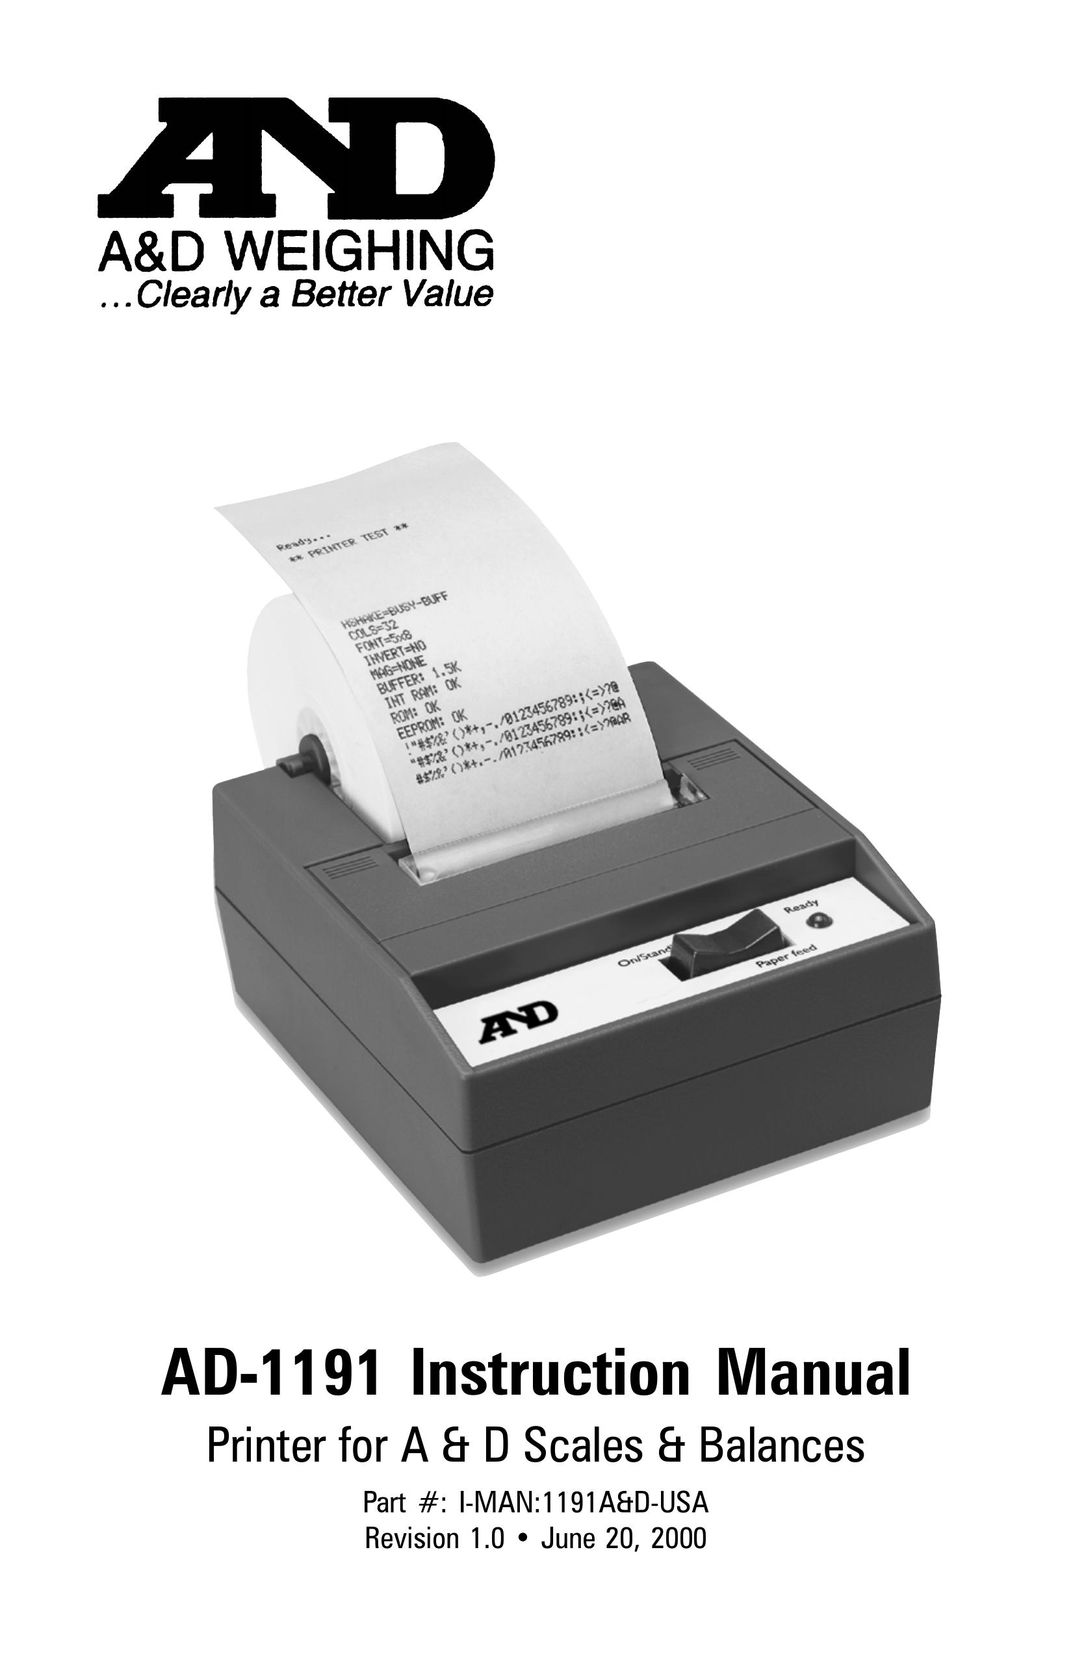 A&D AD-1191 Printer User Manual